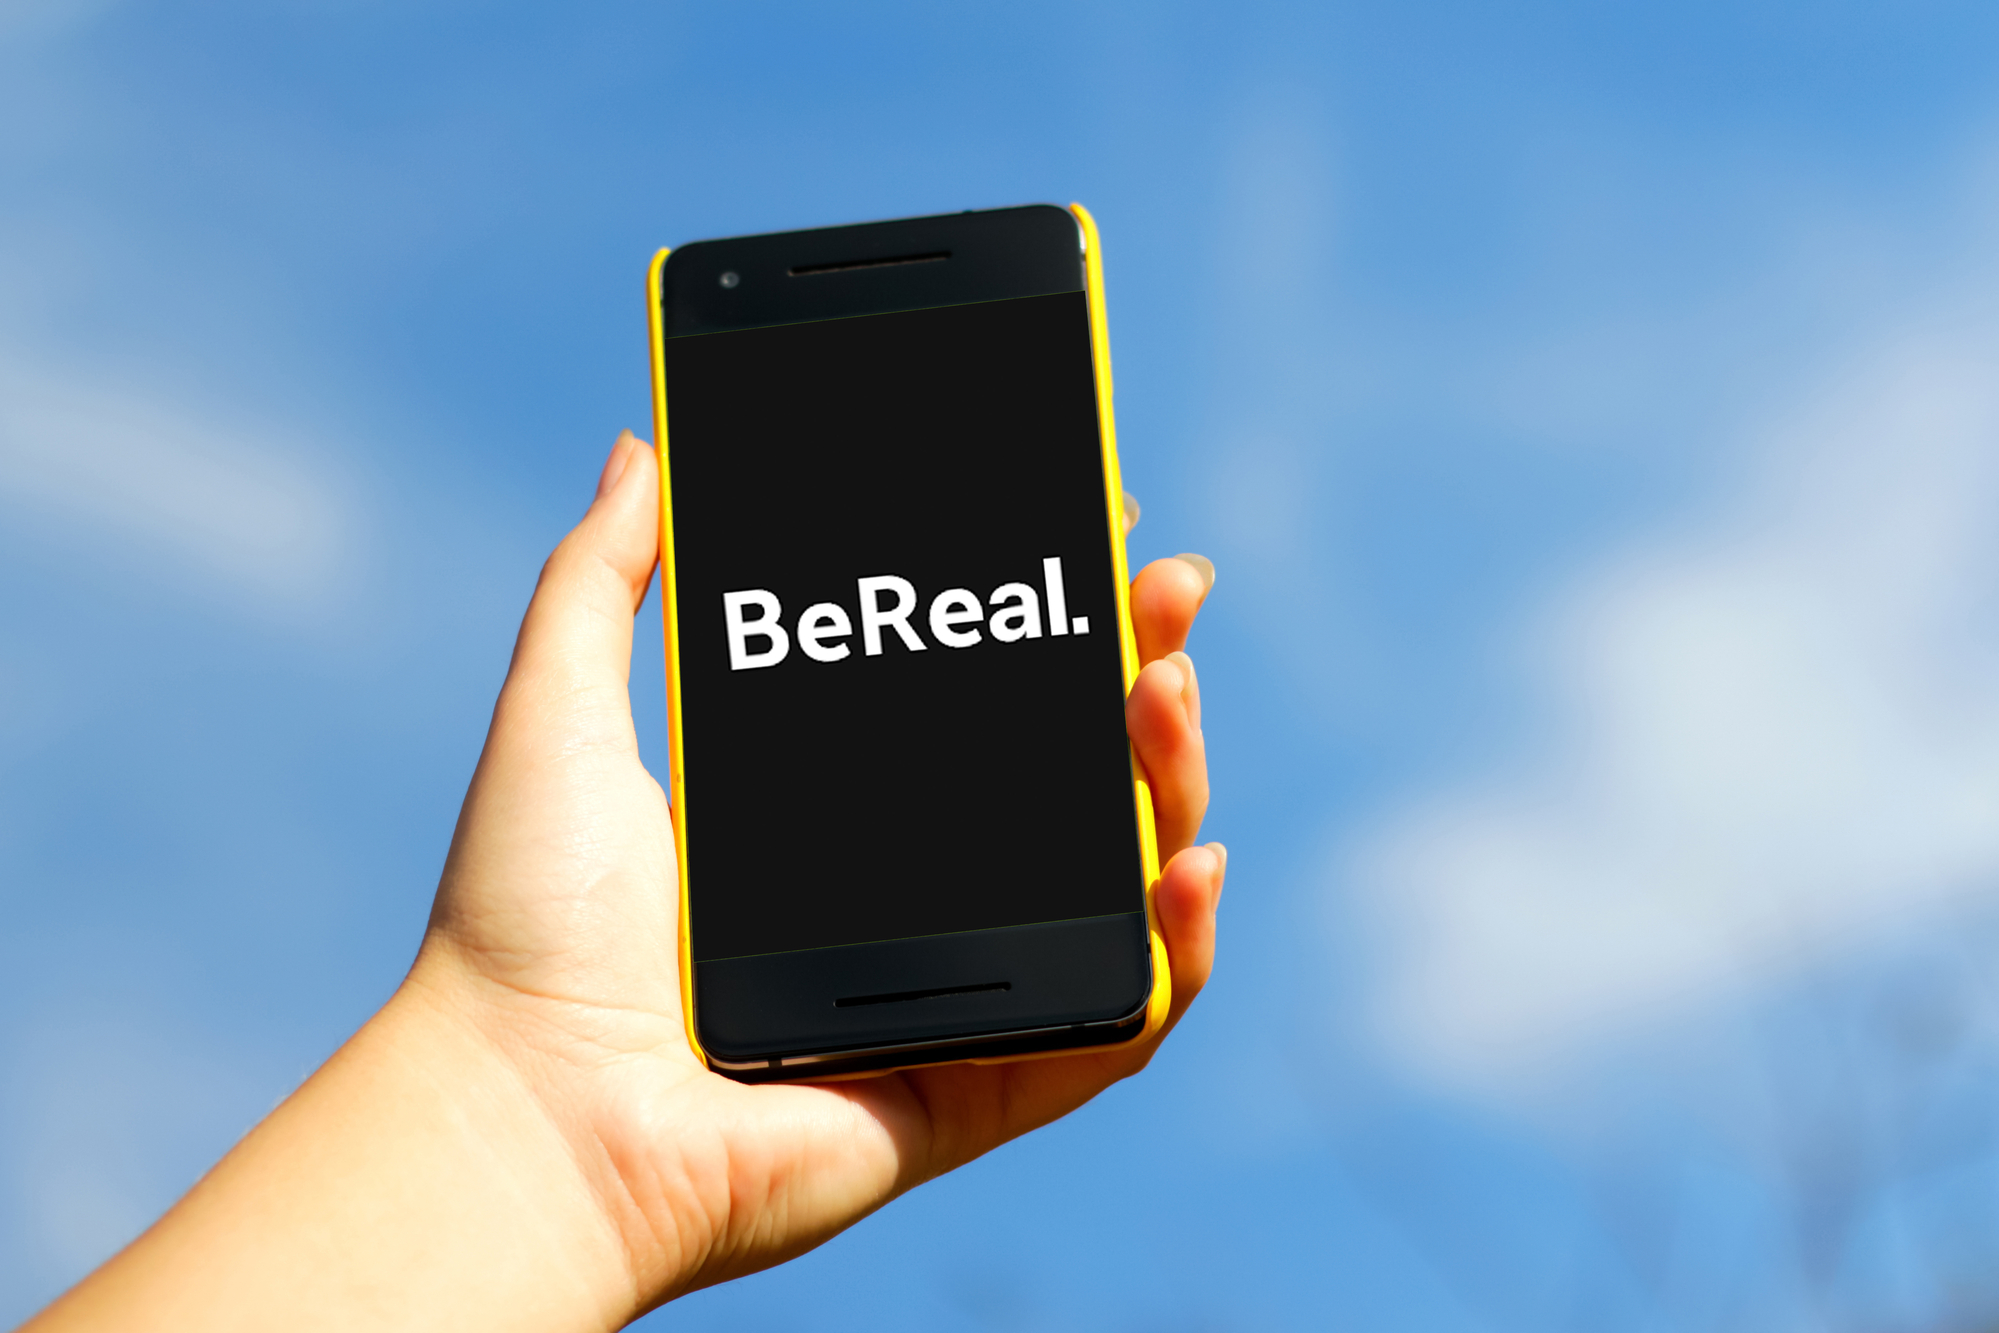 ¿Ya conocías BeReal? ¿La usarías?